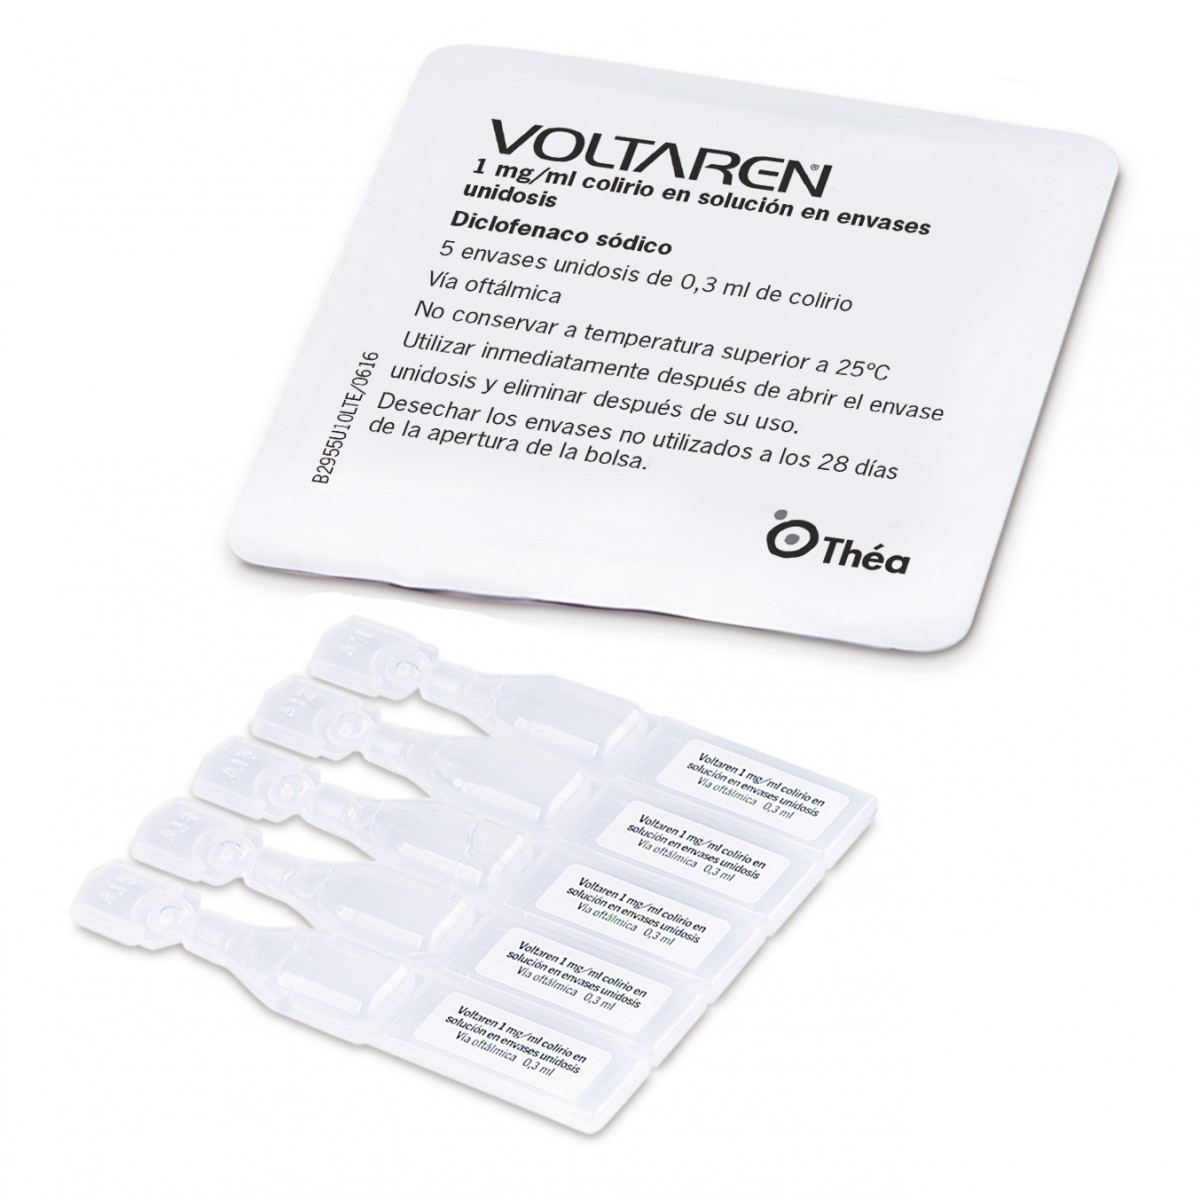 VOLTAREN 1 mg/ml COLIRIO EN SOLUCION EN ENVASES UNIDOSIS, 10 envases unidosis de 0,3 ml fotografía de la forma farmacéutica.